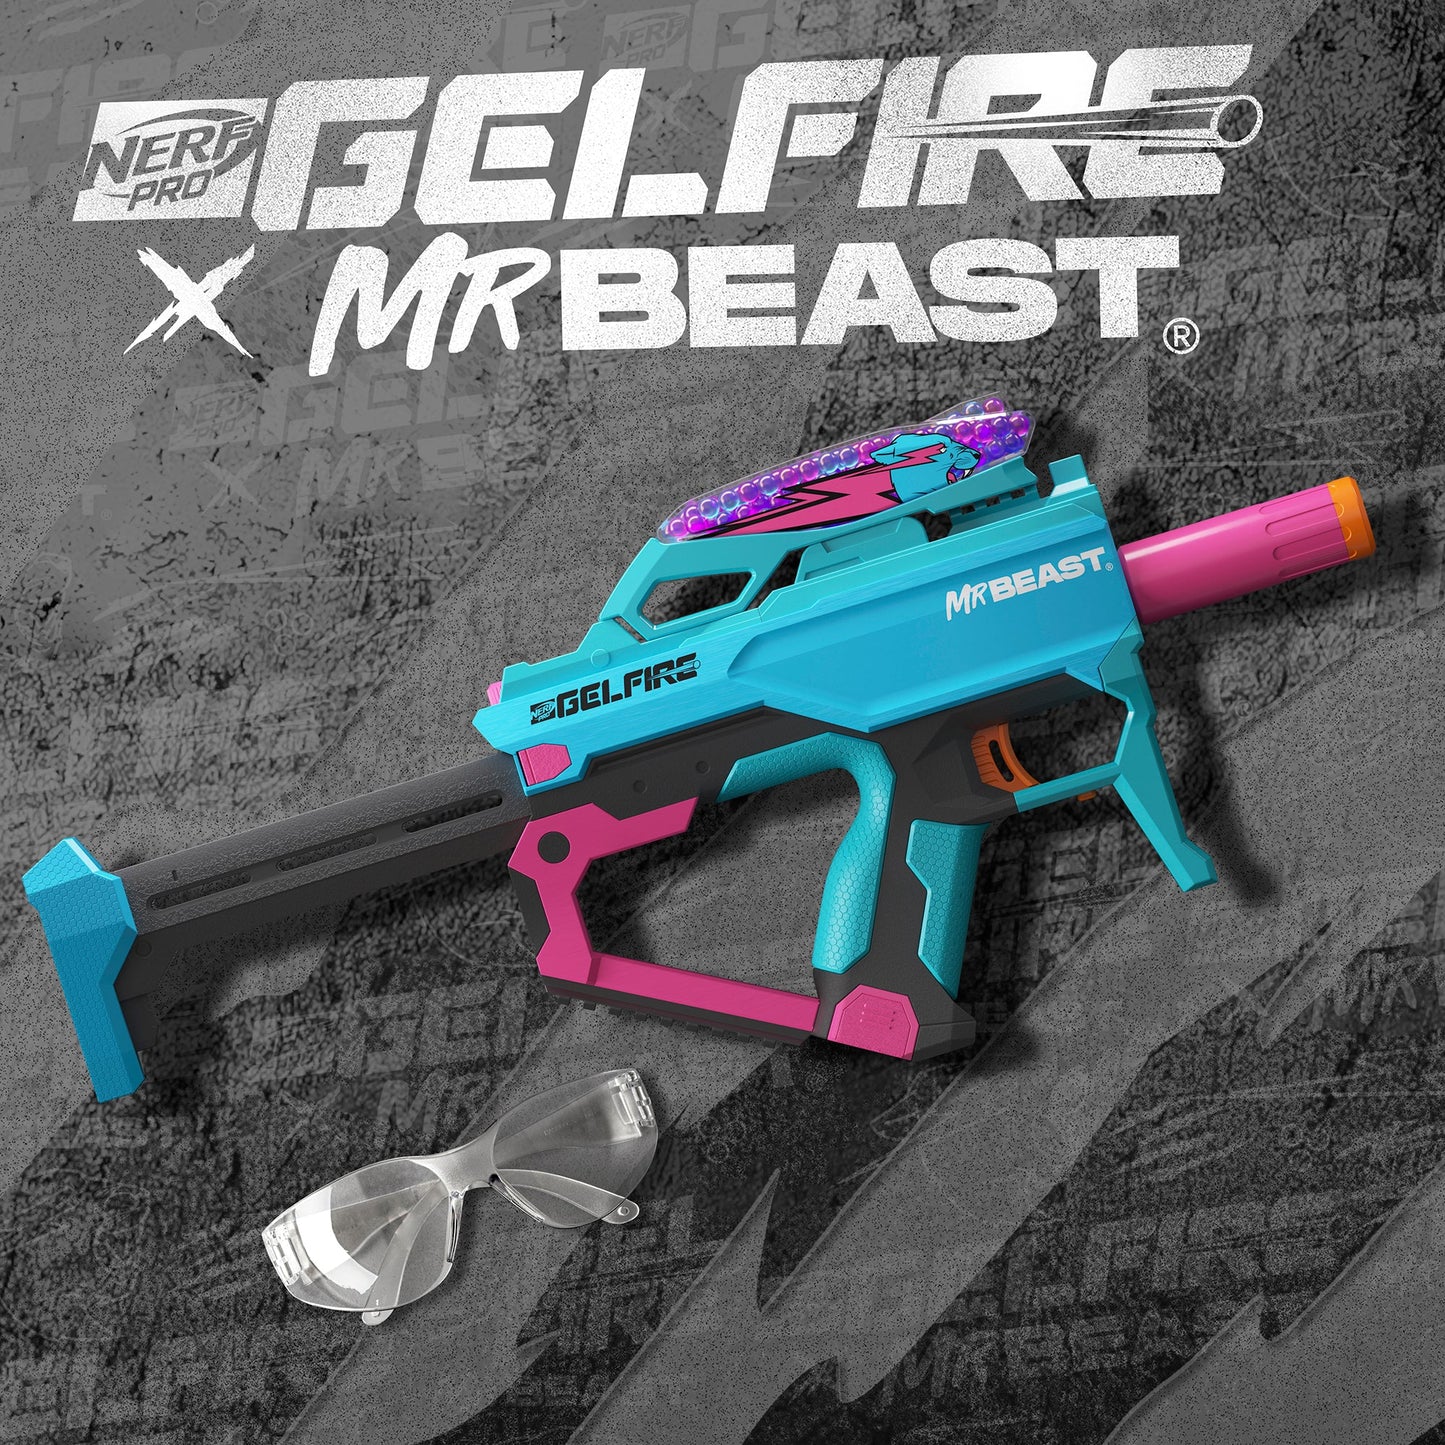 Nerf Pro Gel Fire x Mr. Beast